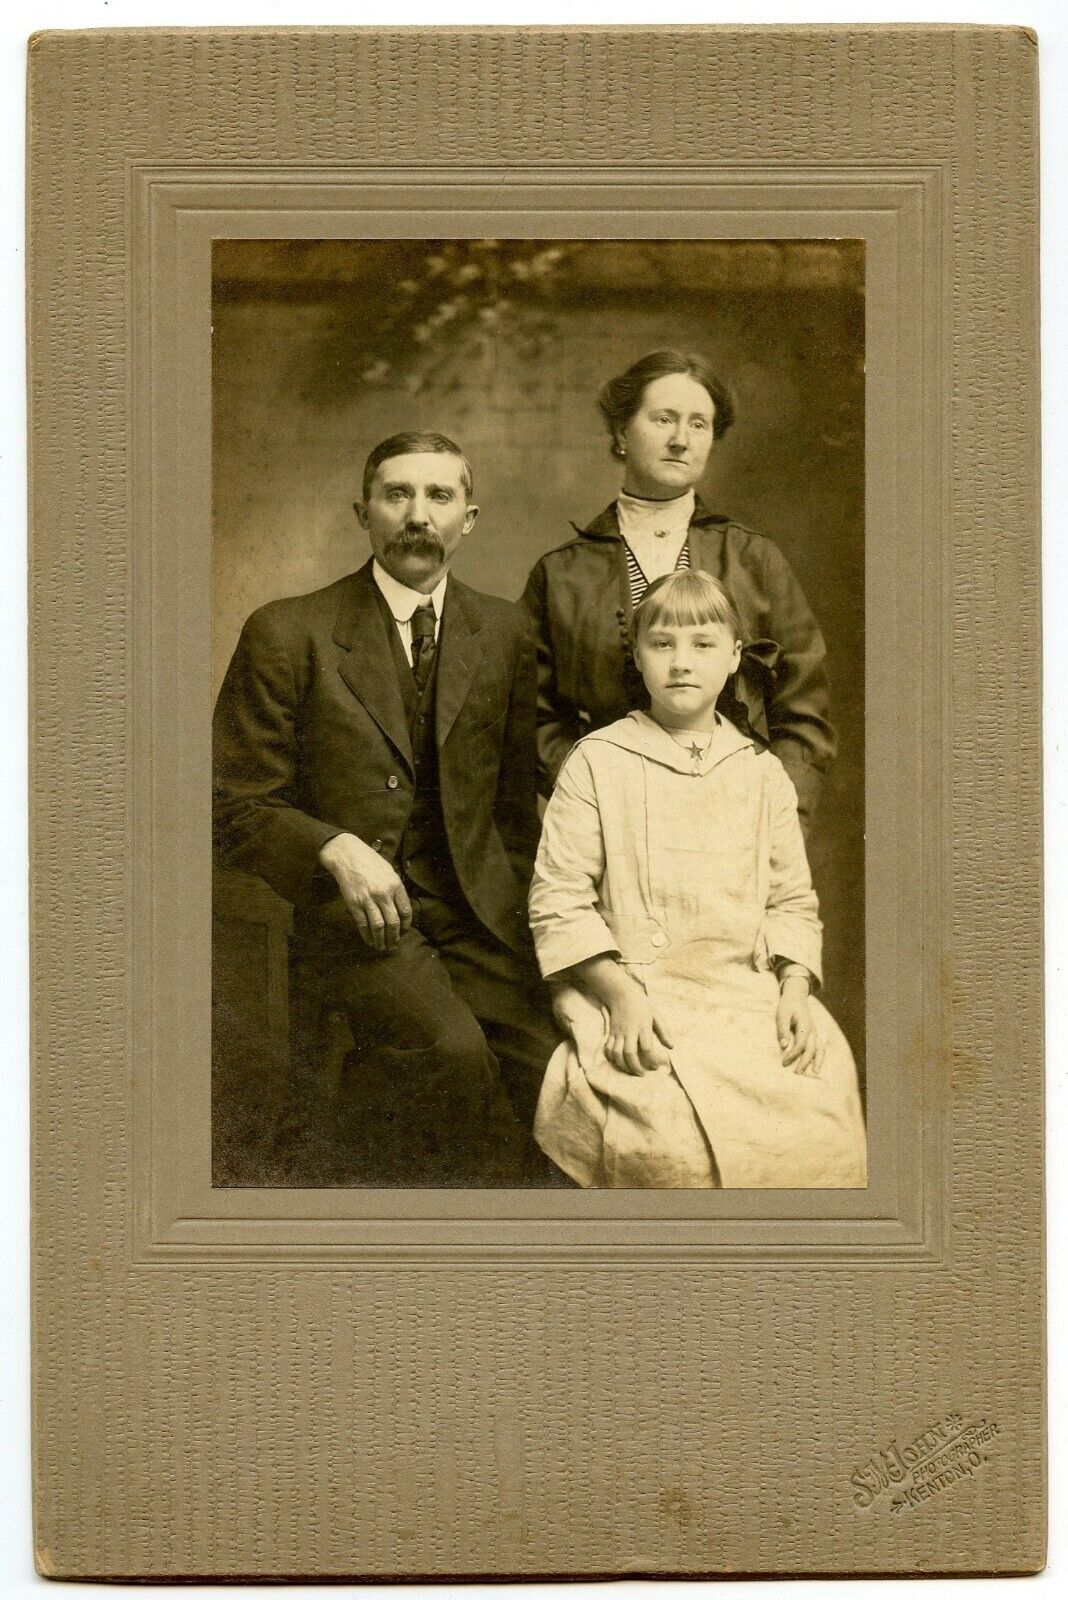 Bill Libold Family, Girl, Vintage Photo by McLohn , Kenton Ohio